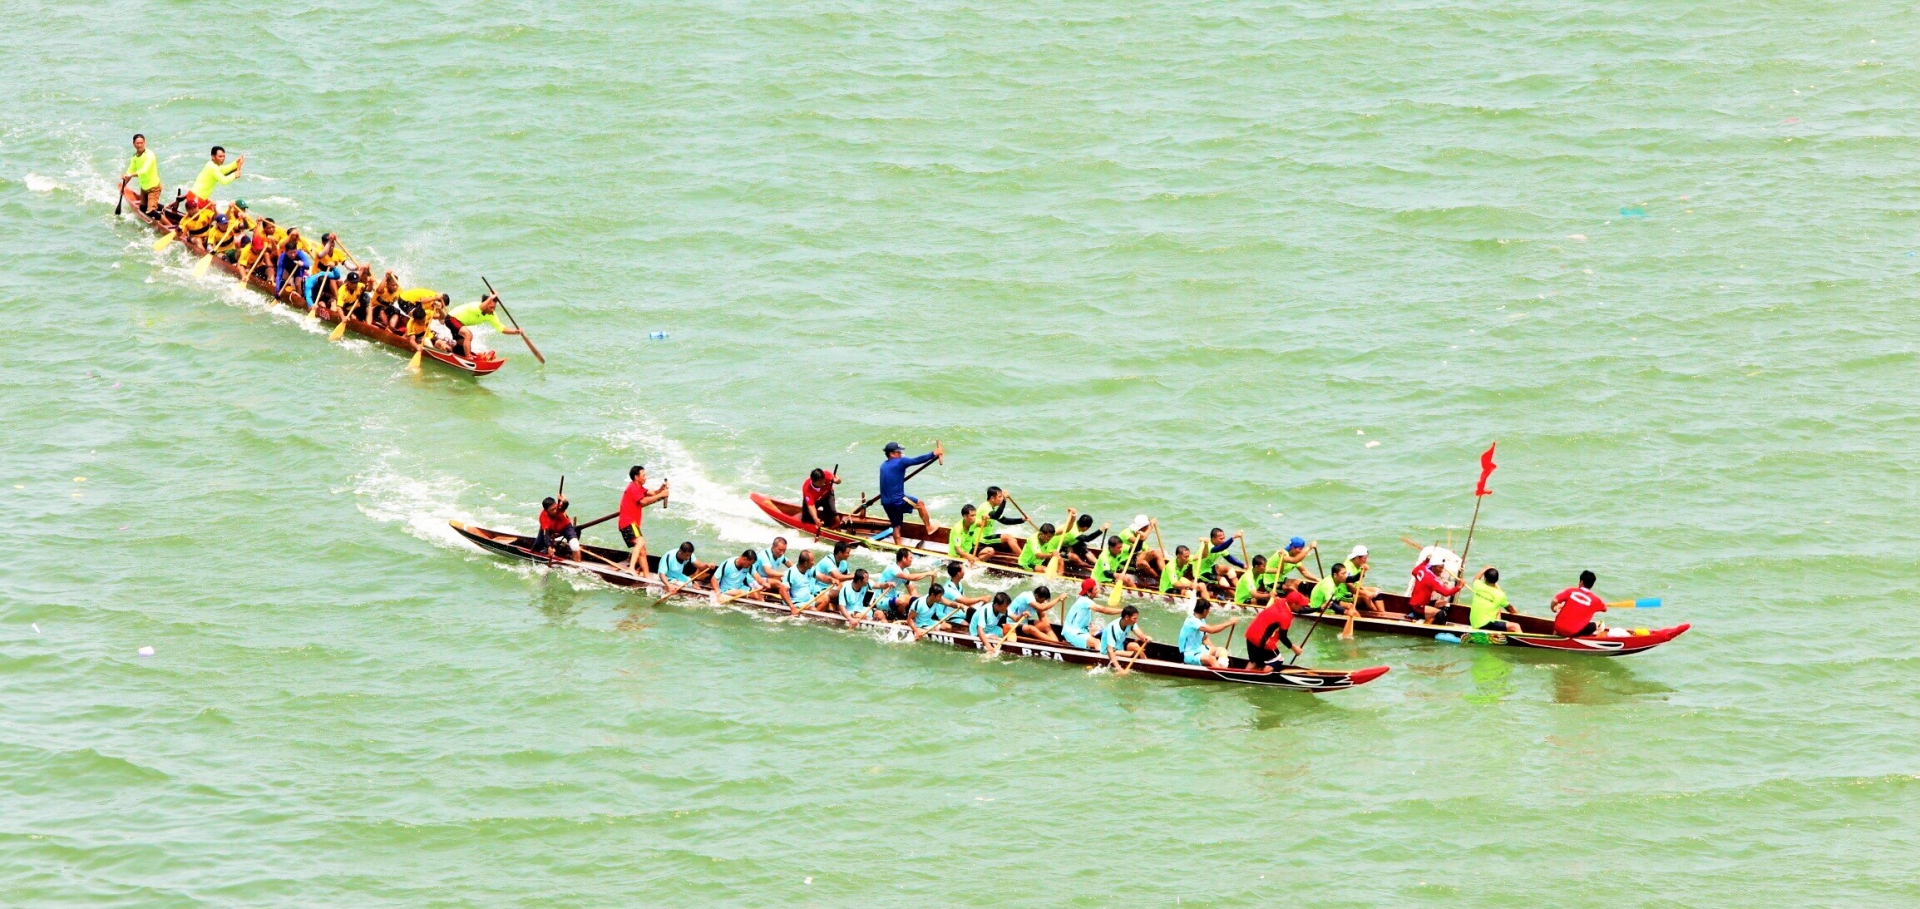 Thuyền đua tham gia thi đấu được quy định chiều dài không quá 16m, số lượng thuyền viên mỗi thuyền không quá 17 người/thuyền.